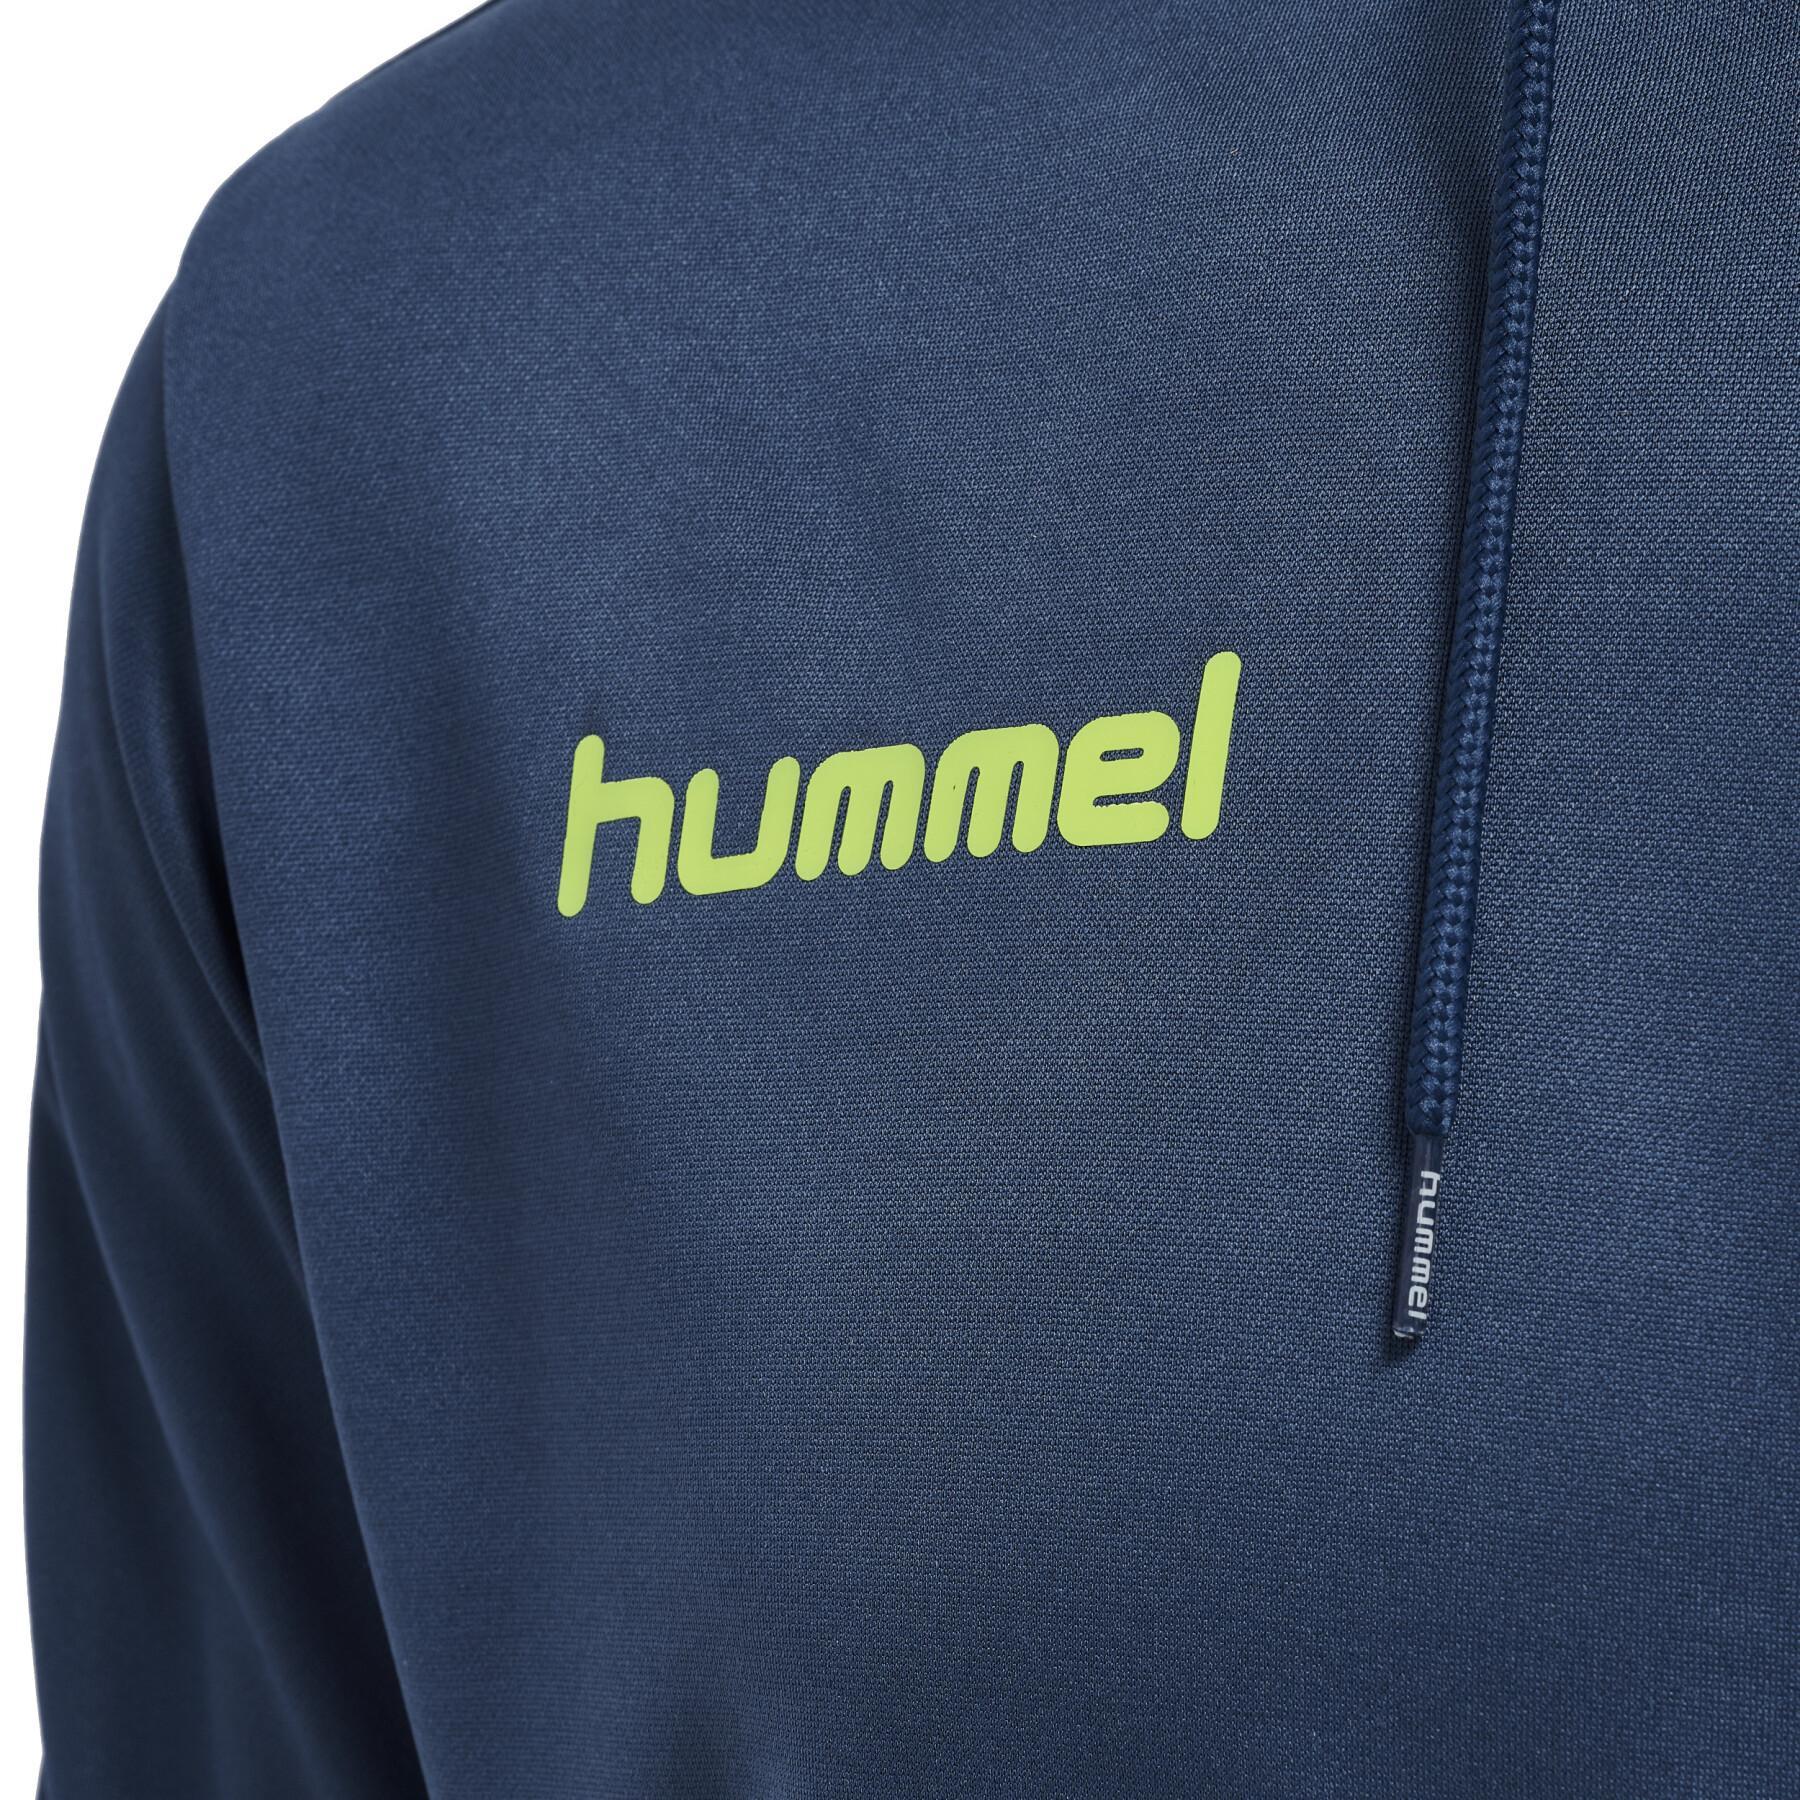 Hooded sweatshirt Hummel Promo - Hummel - Sweats Sportswear - Sweats &  Hoodies